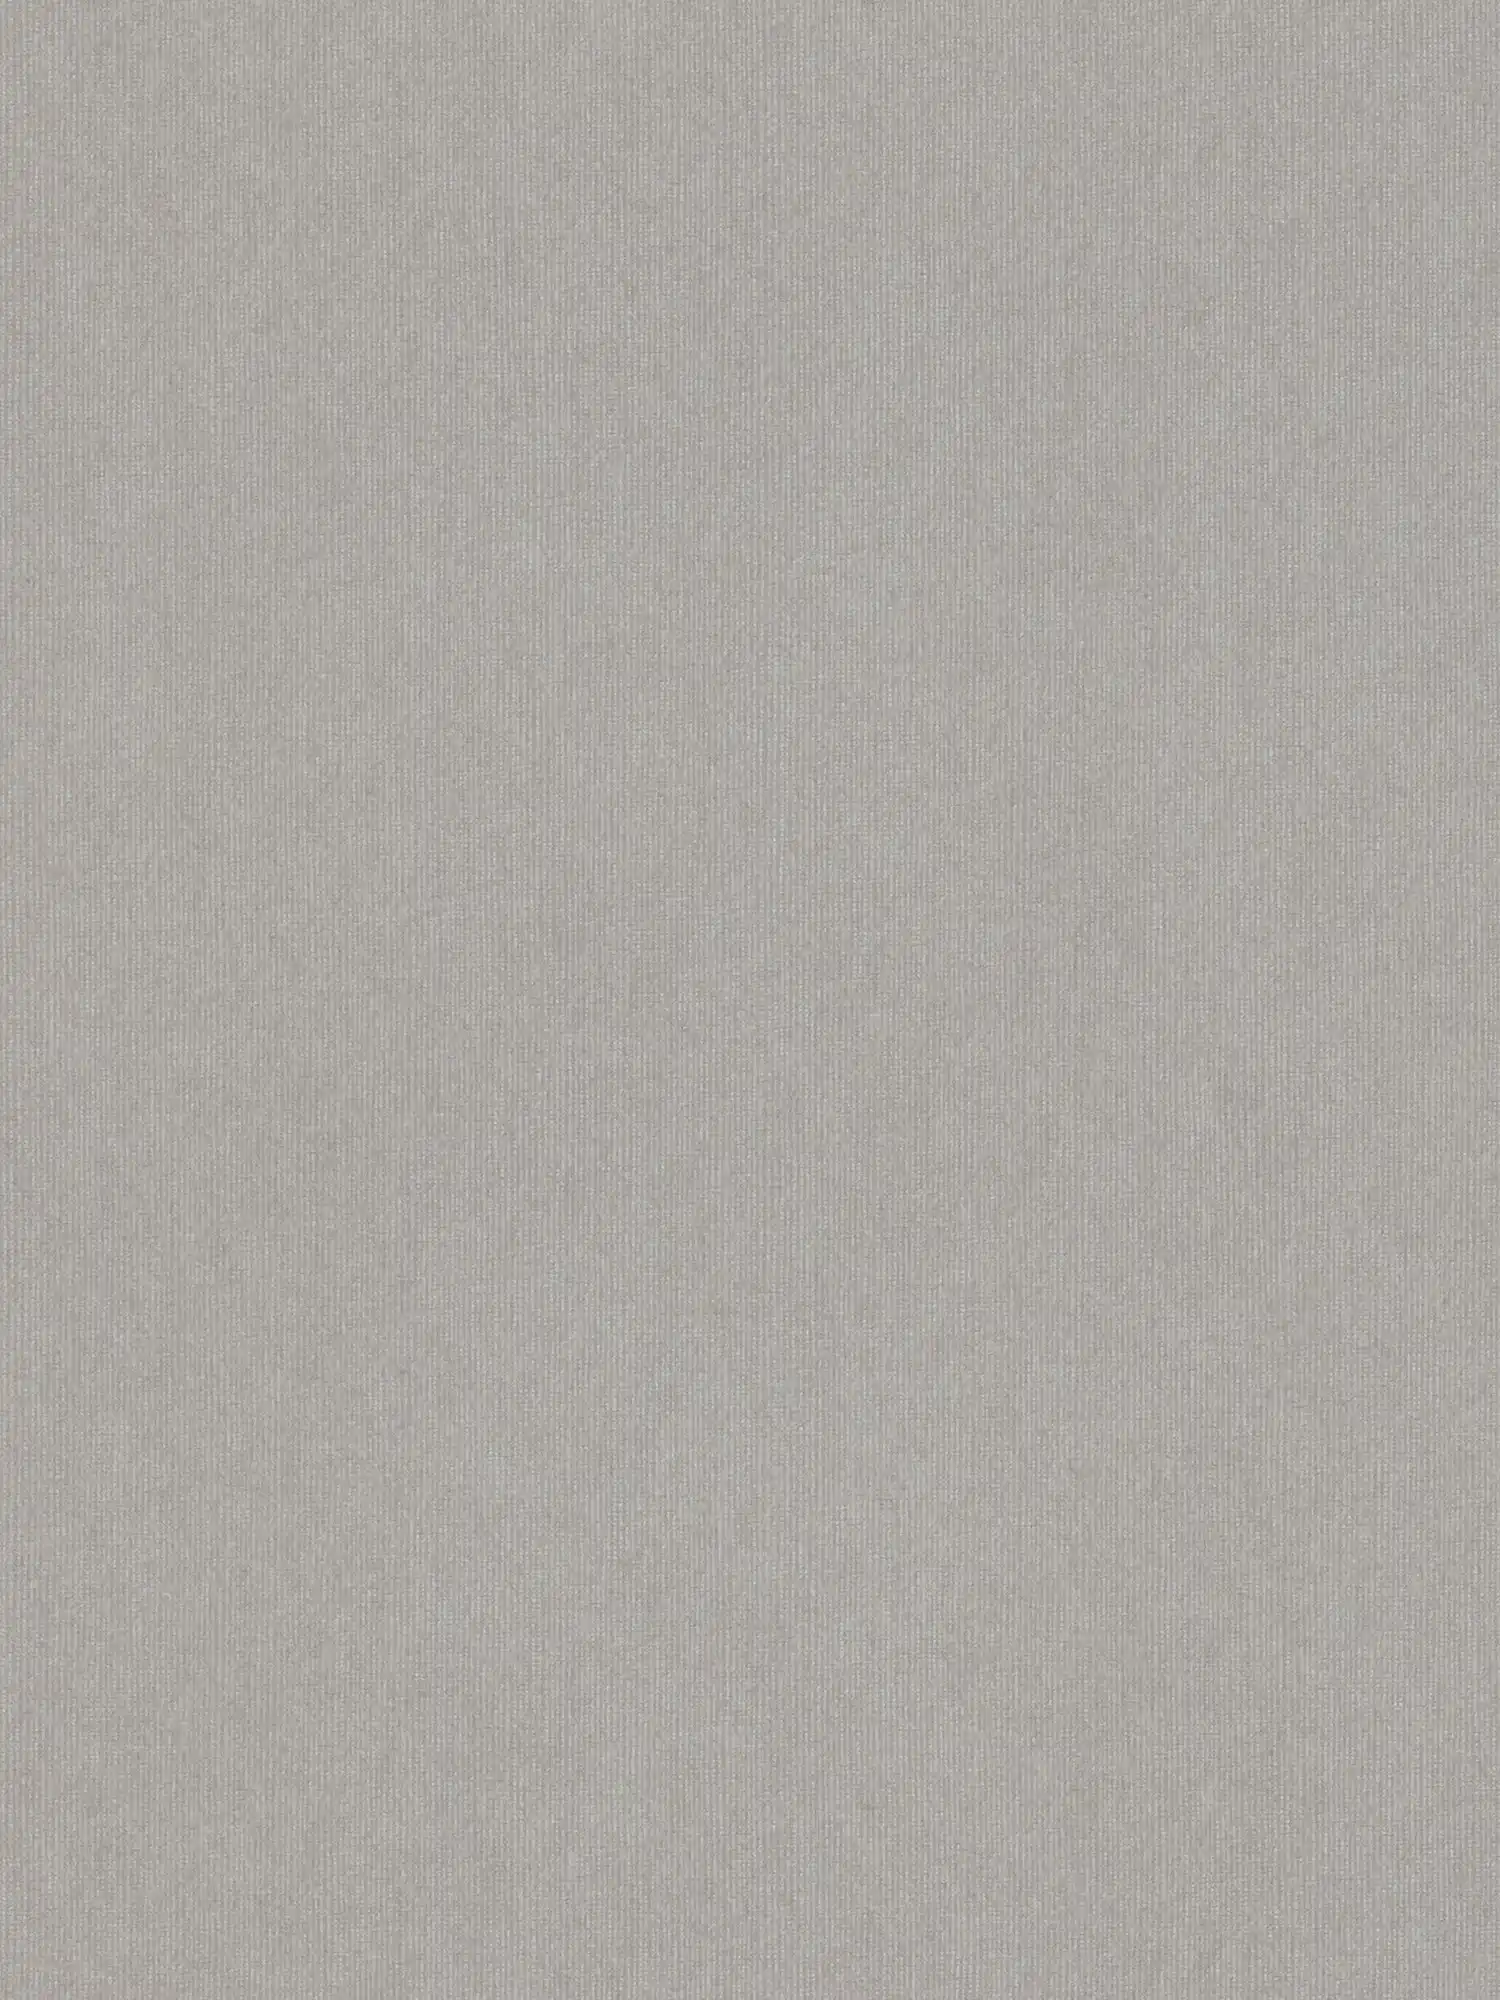 Carta da parati lucida con struttura tessile ed effetto shimmer - grigio, marrone
